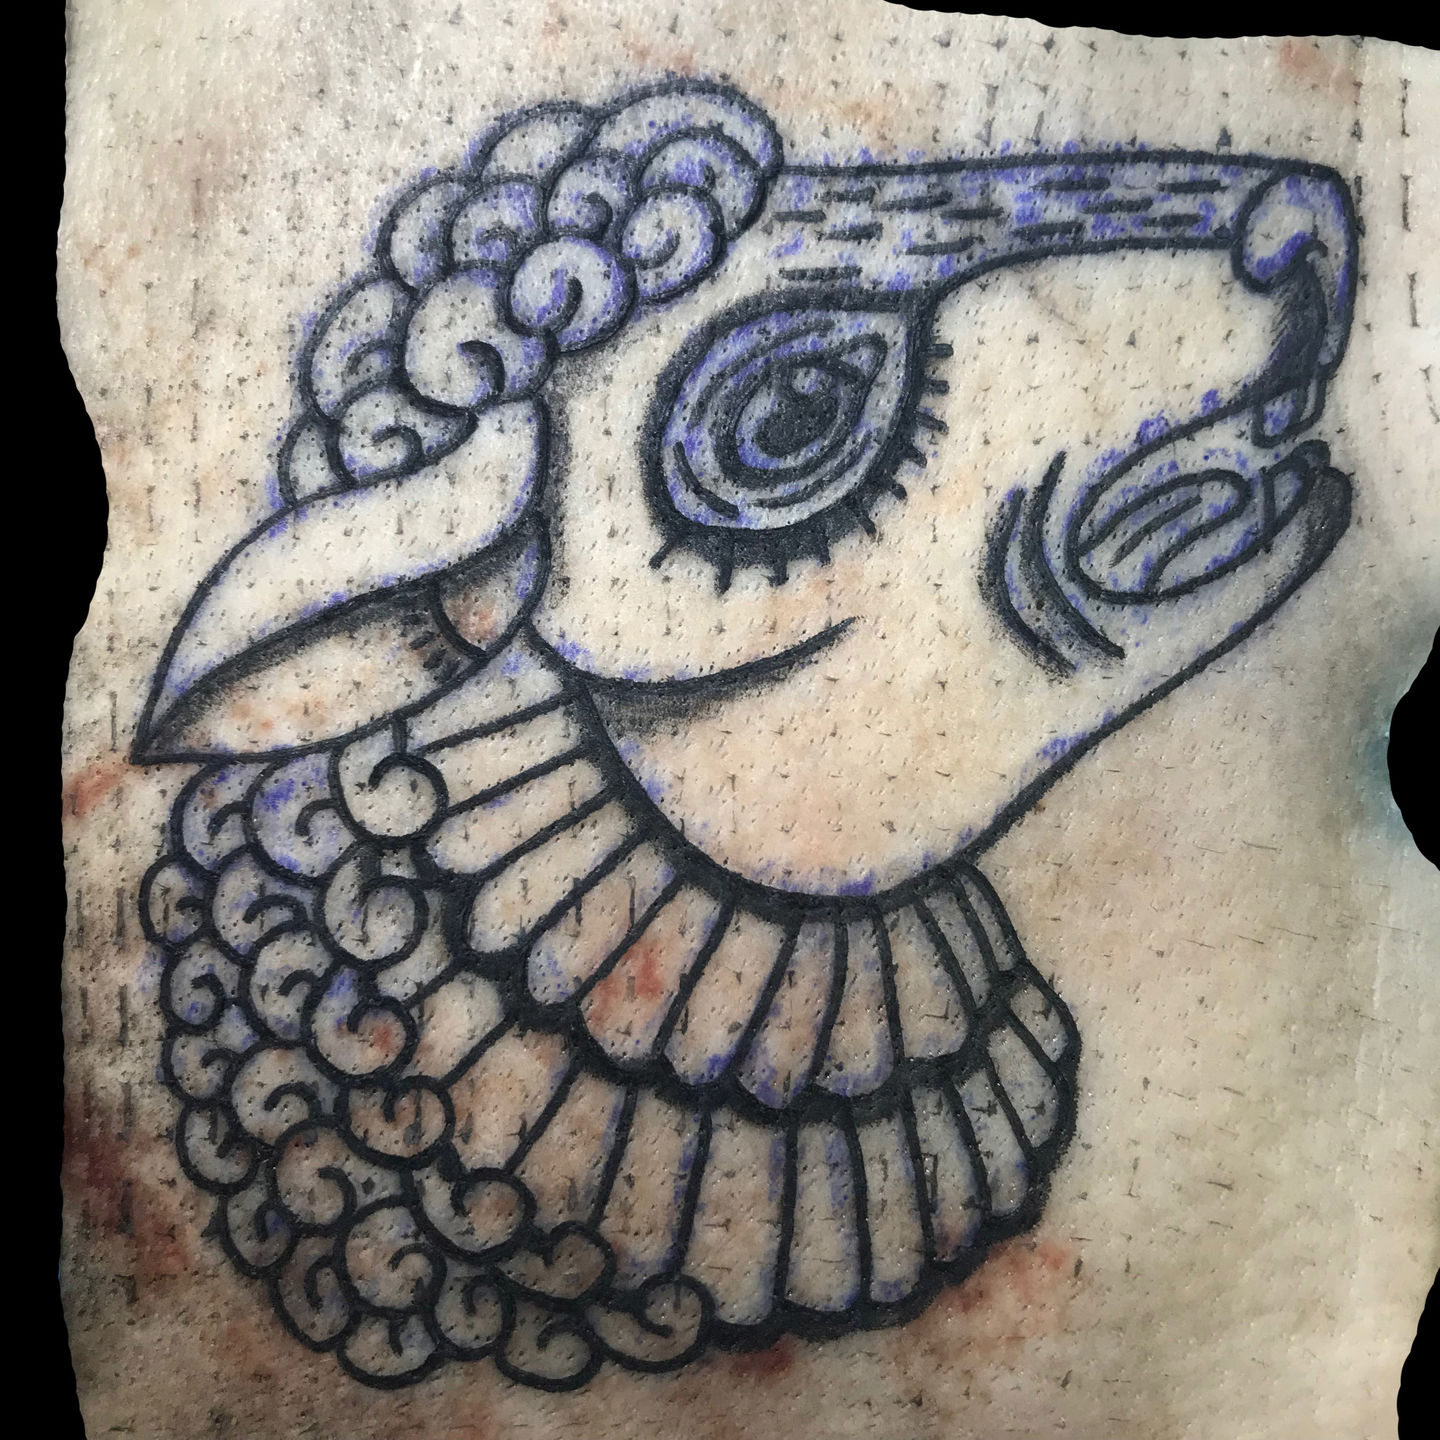 Border Collie And Sheep Tattoo by WildSpiritWolf on DeviantArt